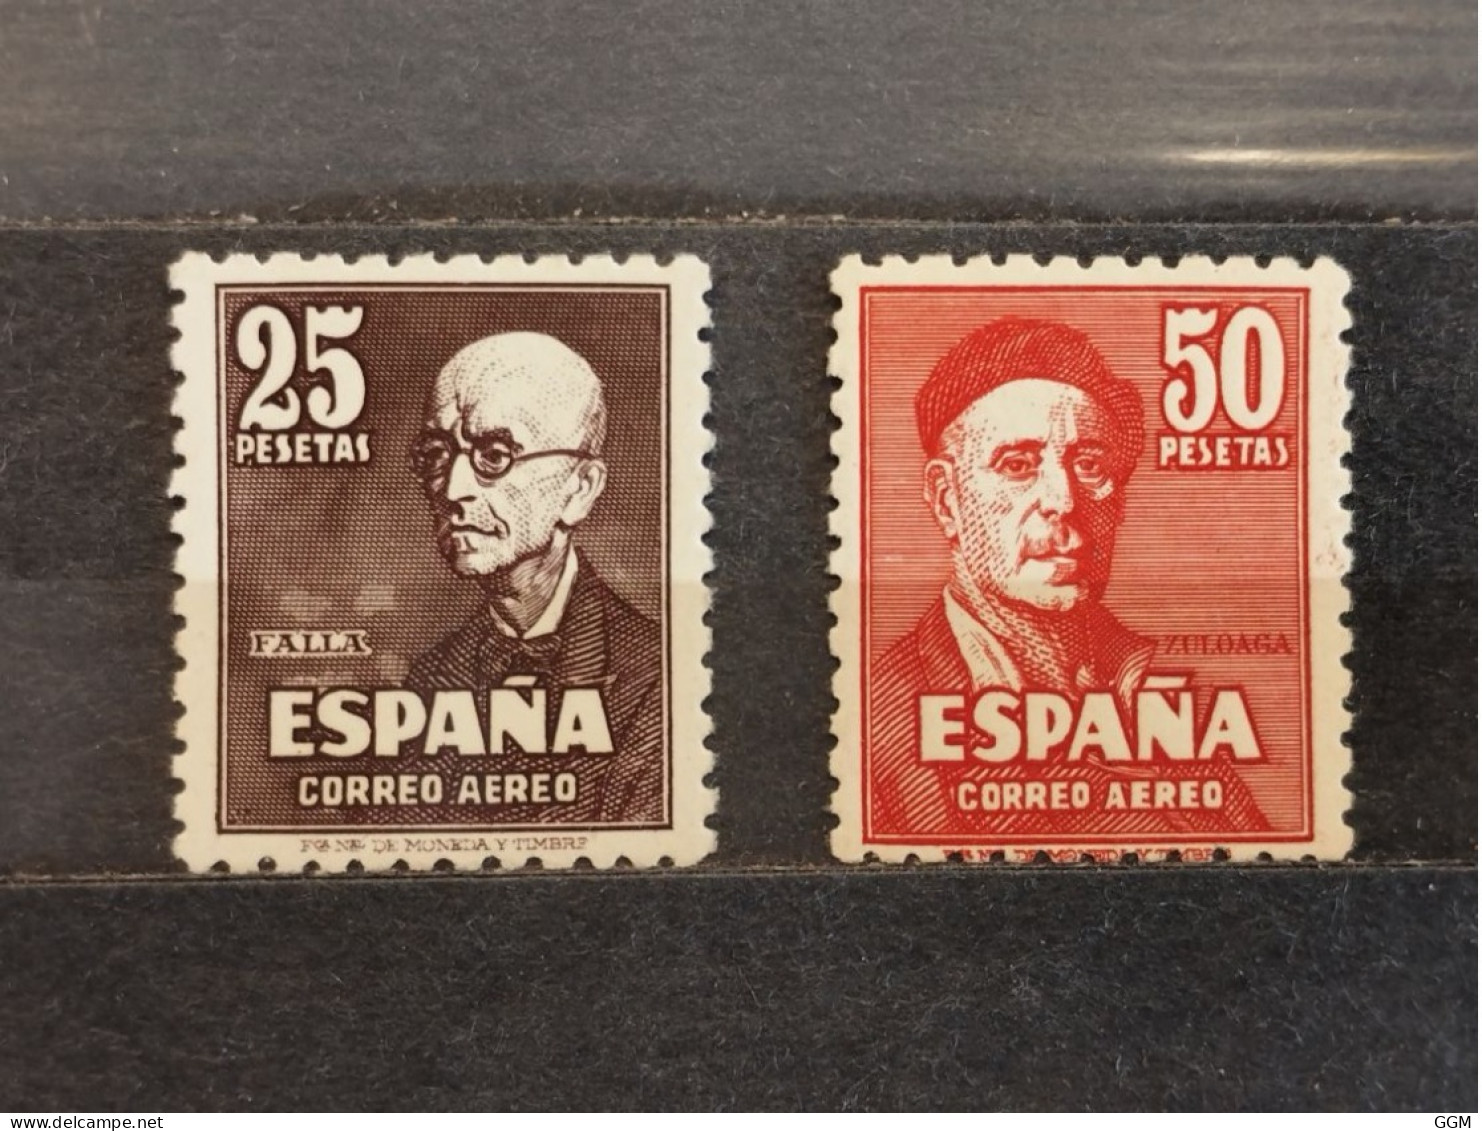 España. 1947. Estado Español. Edifil 1015 Y 1016. Nuevos ** MNH - Nuevos